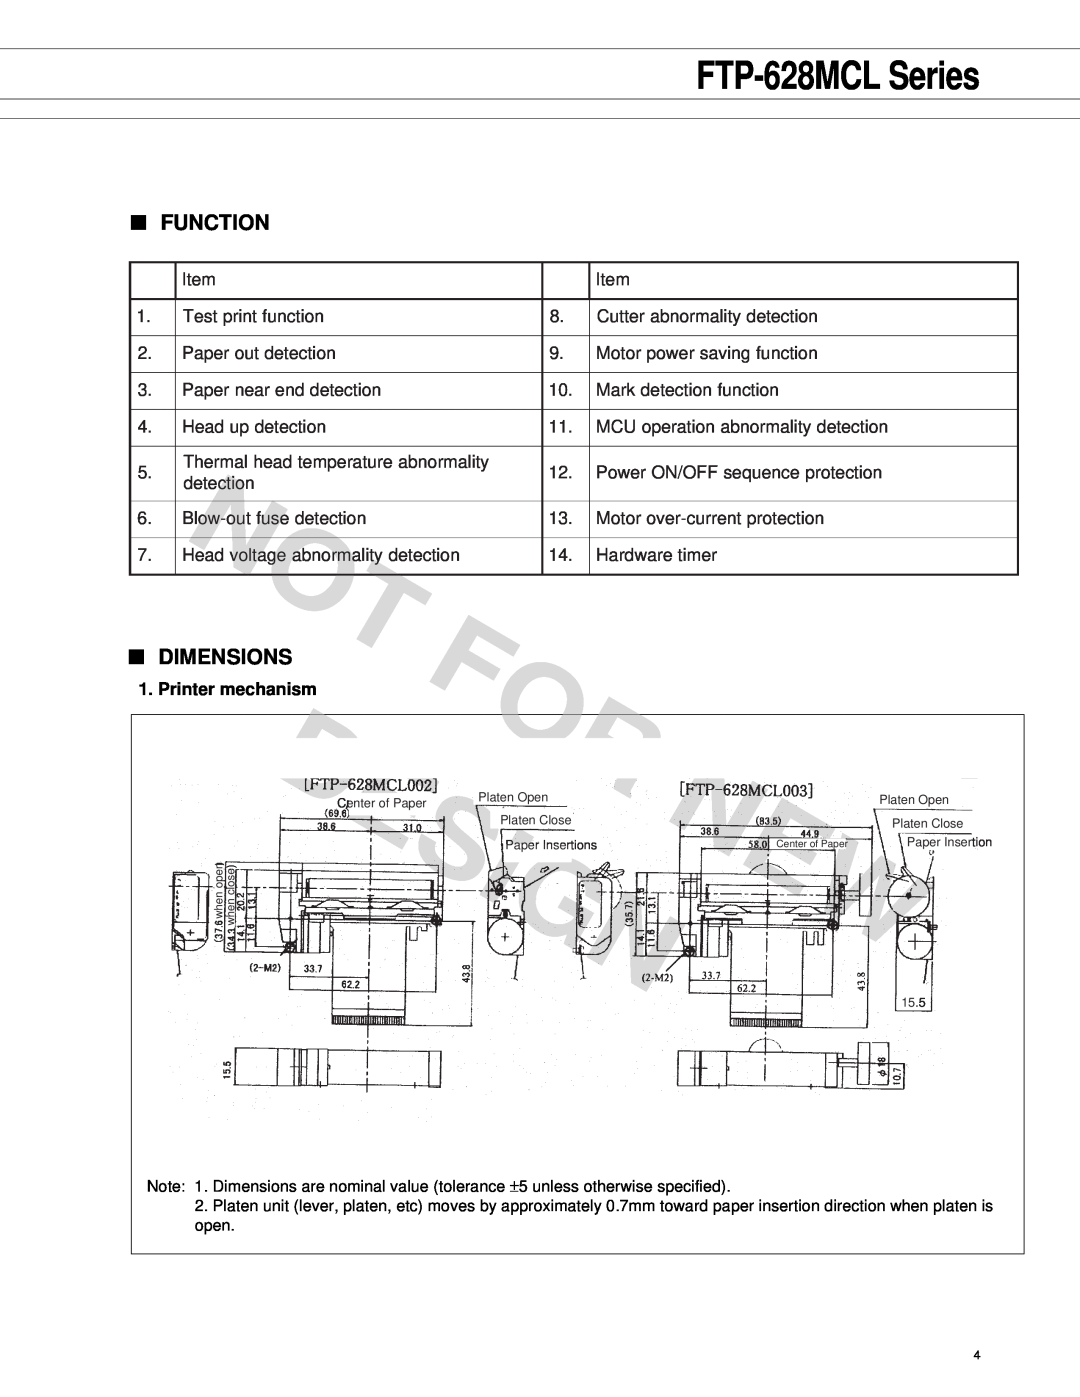 Fujitsu FTP-628 Series manual Function, Dimensions, Printer mechanism, Design, FTP-628MCL Series 